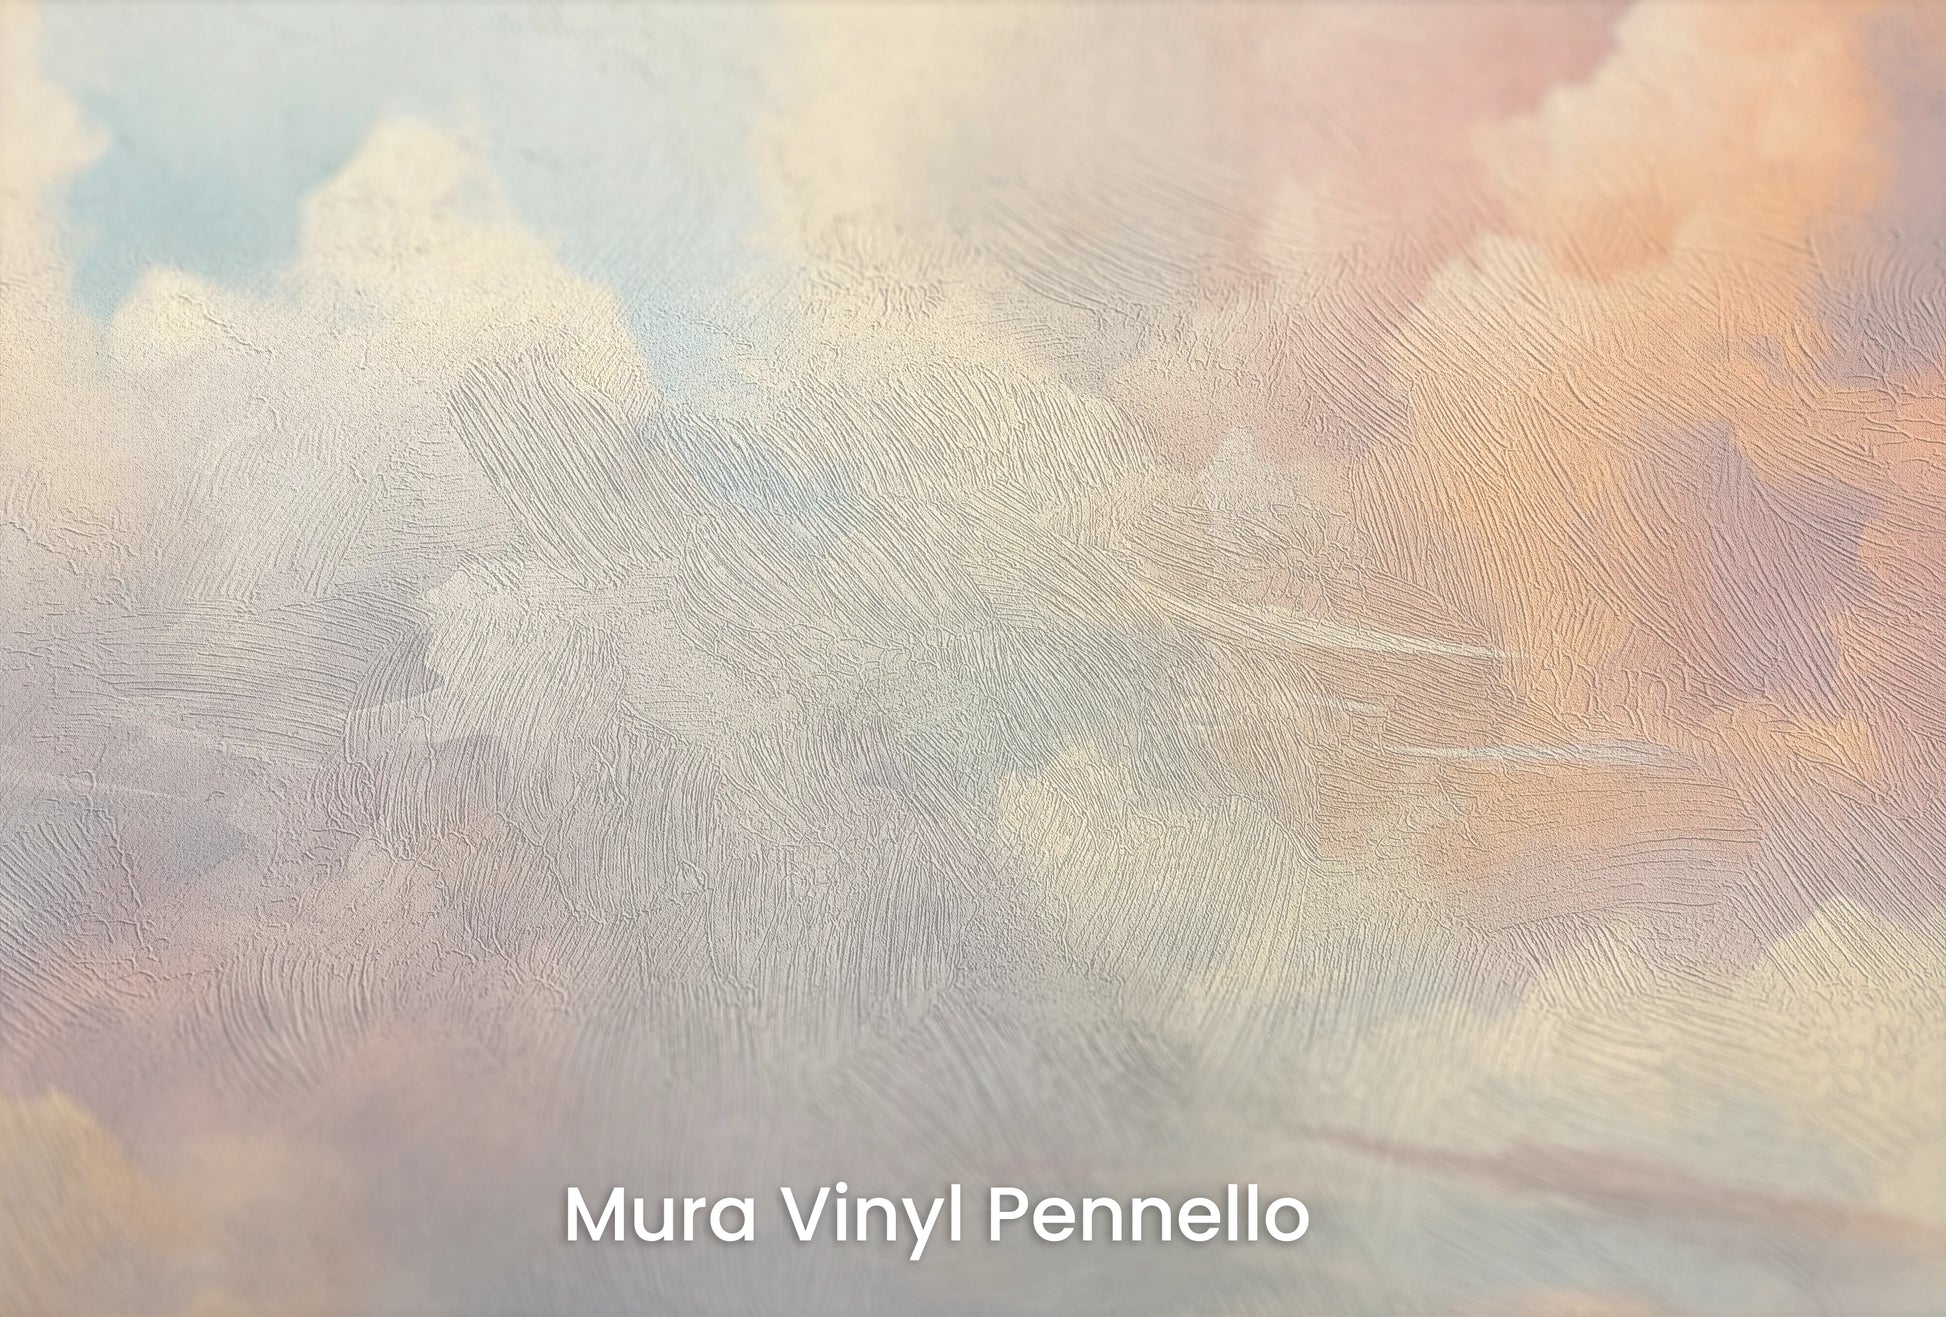 Zbliżenie na artystyczną fototapetę o nazwie Serene Skies na podłożu Mura Vinyl Pennello - faktura pociągnięć pędzla malarskiego.